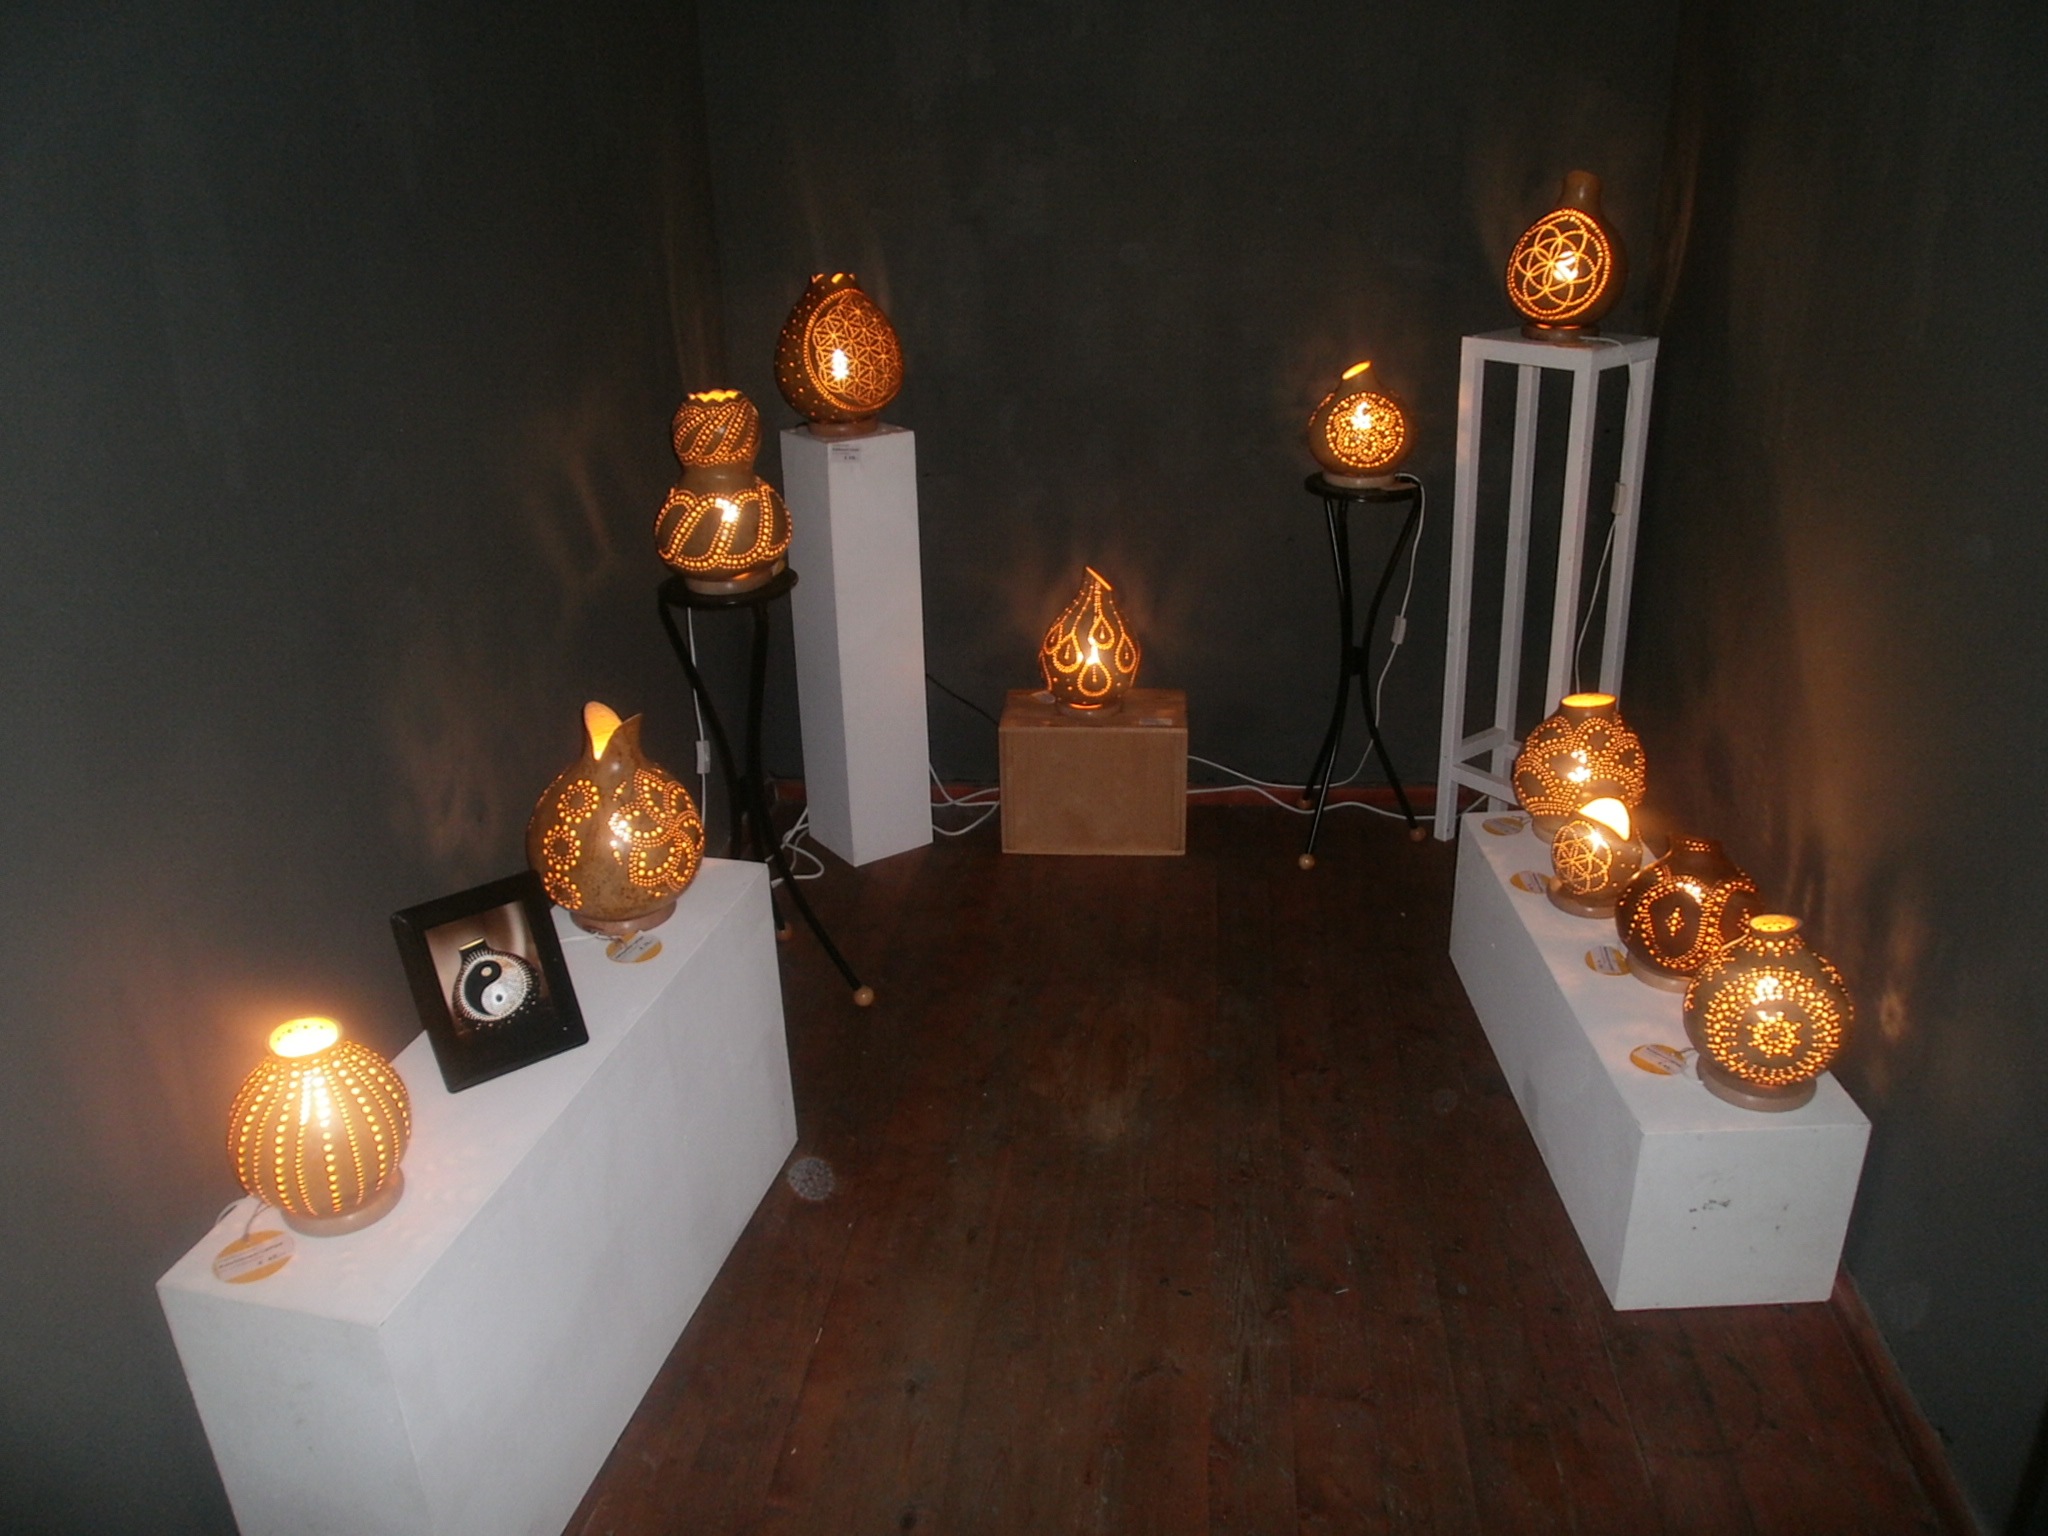 Die Black Box des Neunburger Kunstquartiers wird während der Werkschau "Kunst für alle" durch Kalubassen-Lampen der Künstlerin Angelika Pesold mystisch beleuchtet.